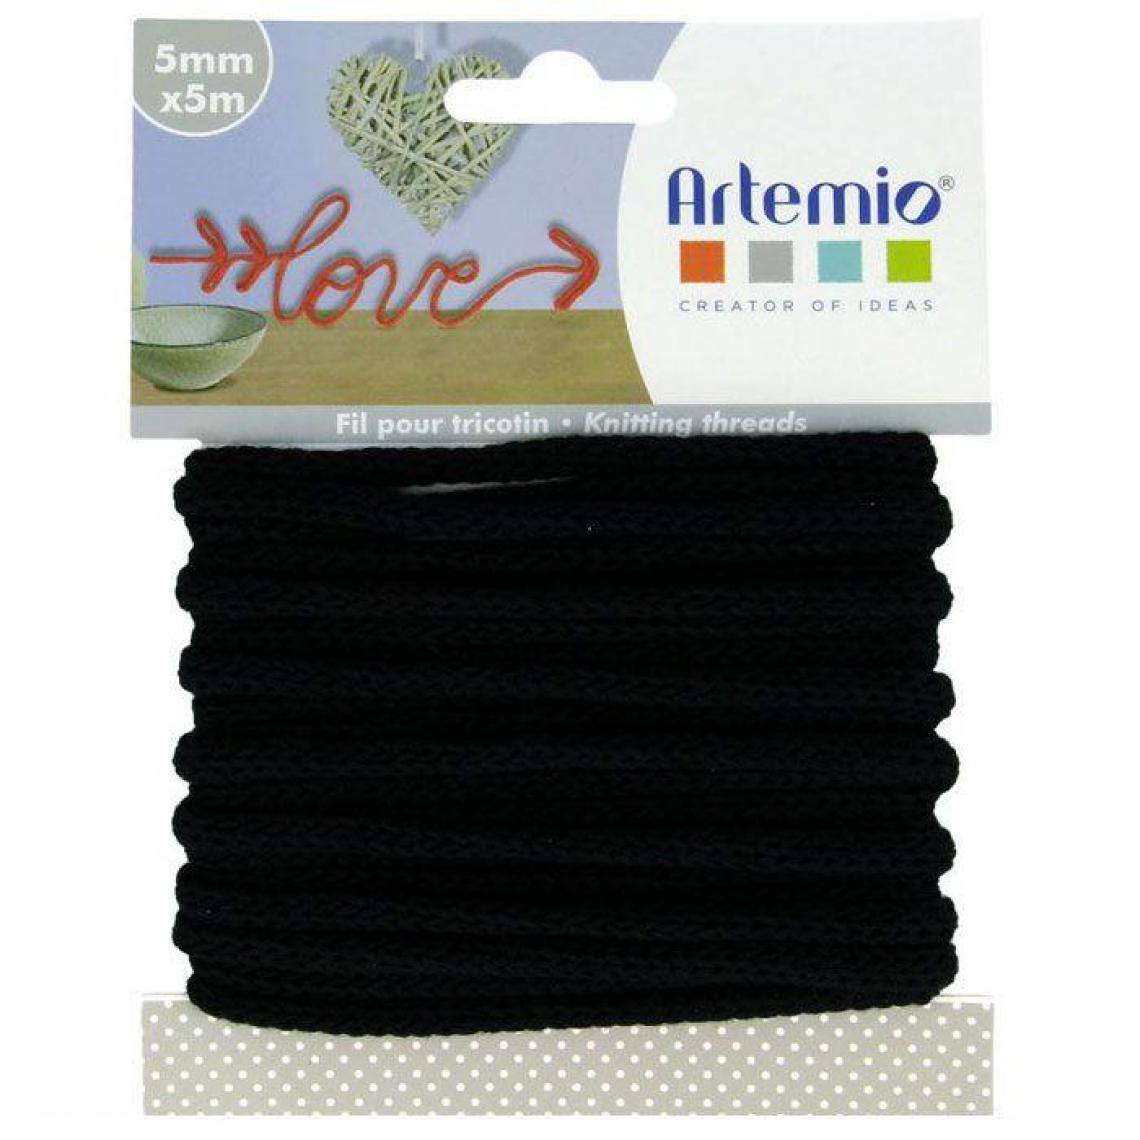 Artemio - Fil à tricotin 5 mm x 5 m - noir - Dessin et peinture